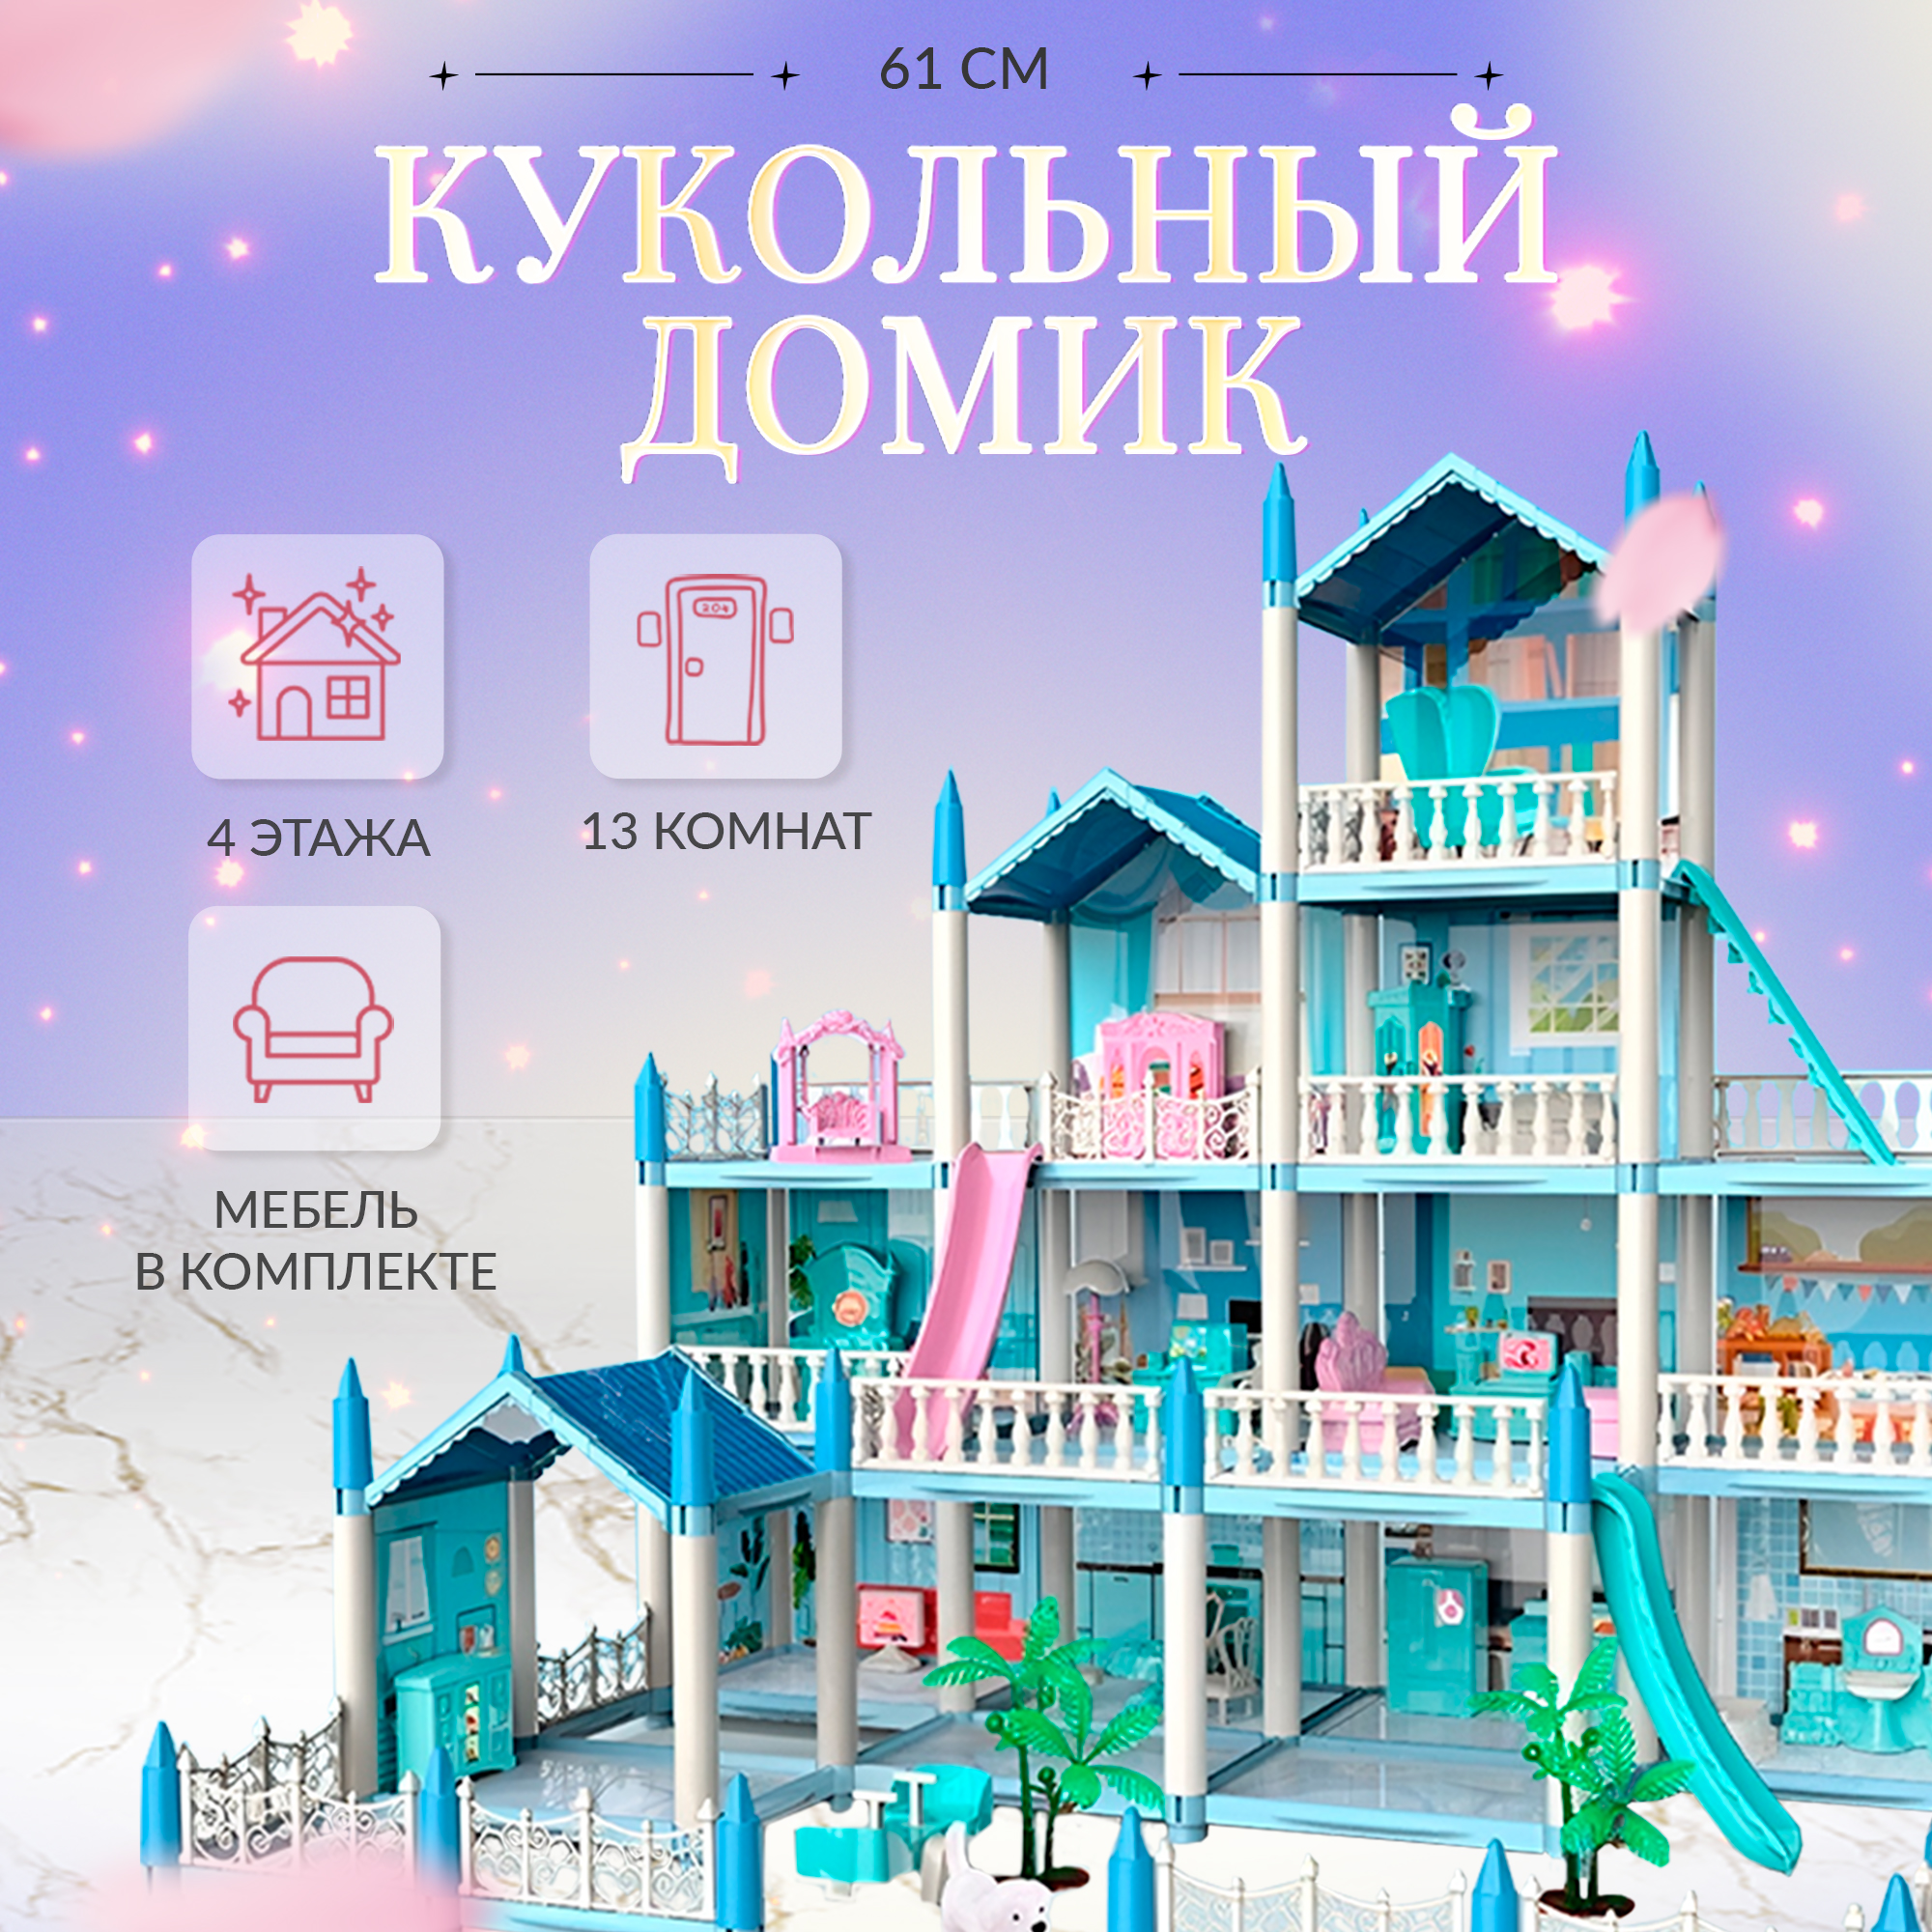 Сборный кукольный домик 4 этажа, 13 комнат, мебель, аксессуары, кукла, питомец 11500021/1 sharktoys сборный кукольный домик snow princess